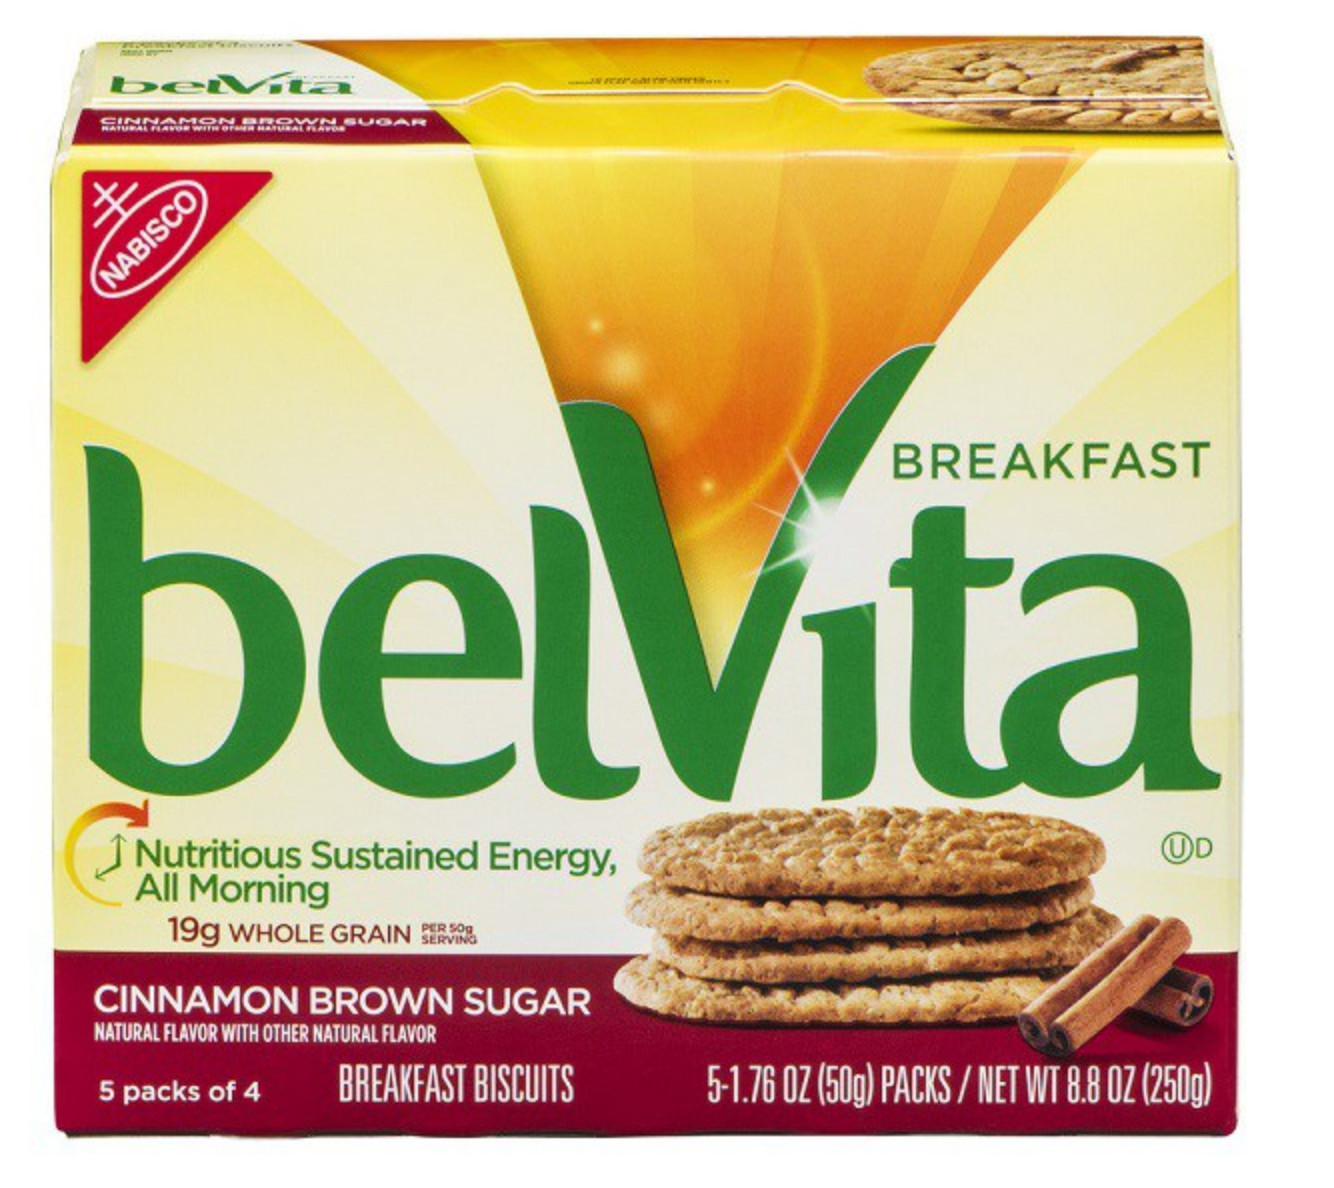 Healthy Breakfast Biscuits
 belVita Biscuits